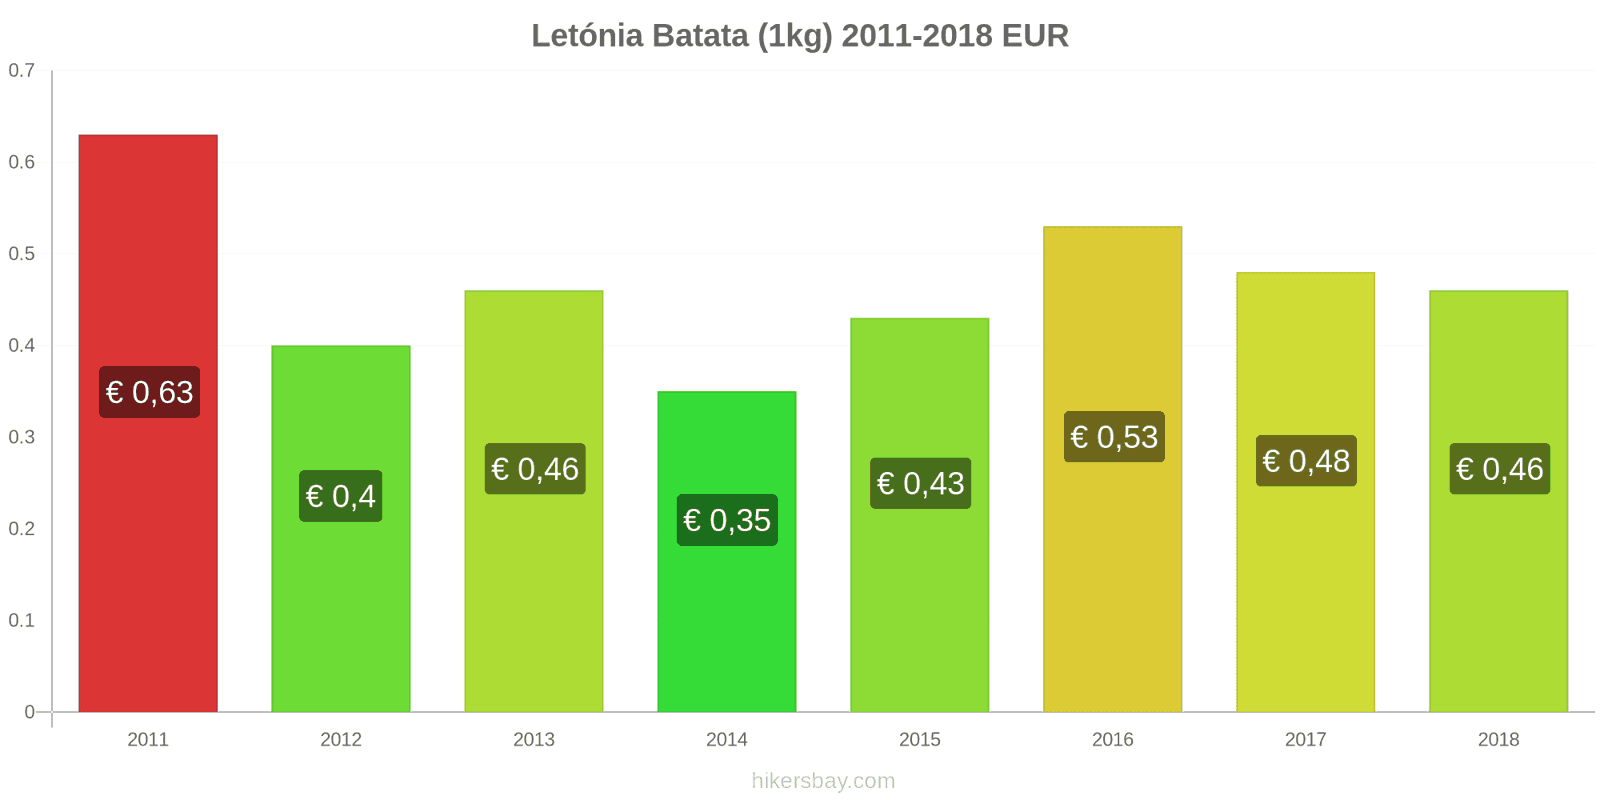 Letónia mudanças de preços Batatas (1kg) hikersbay.com